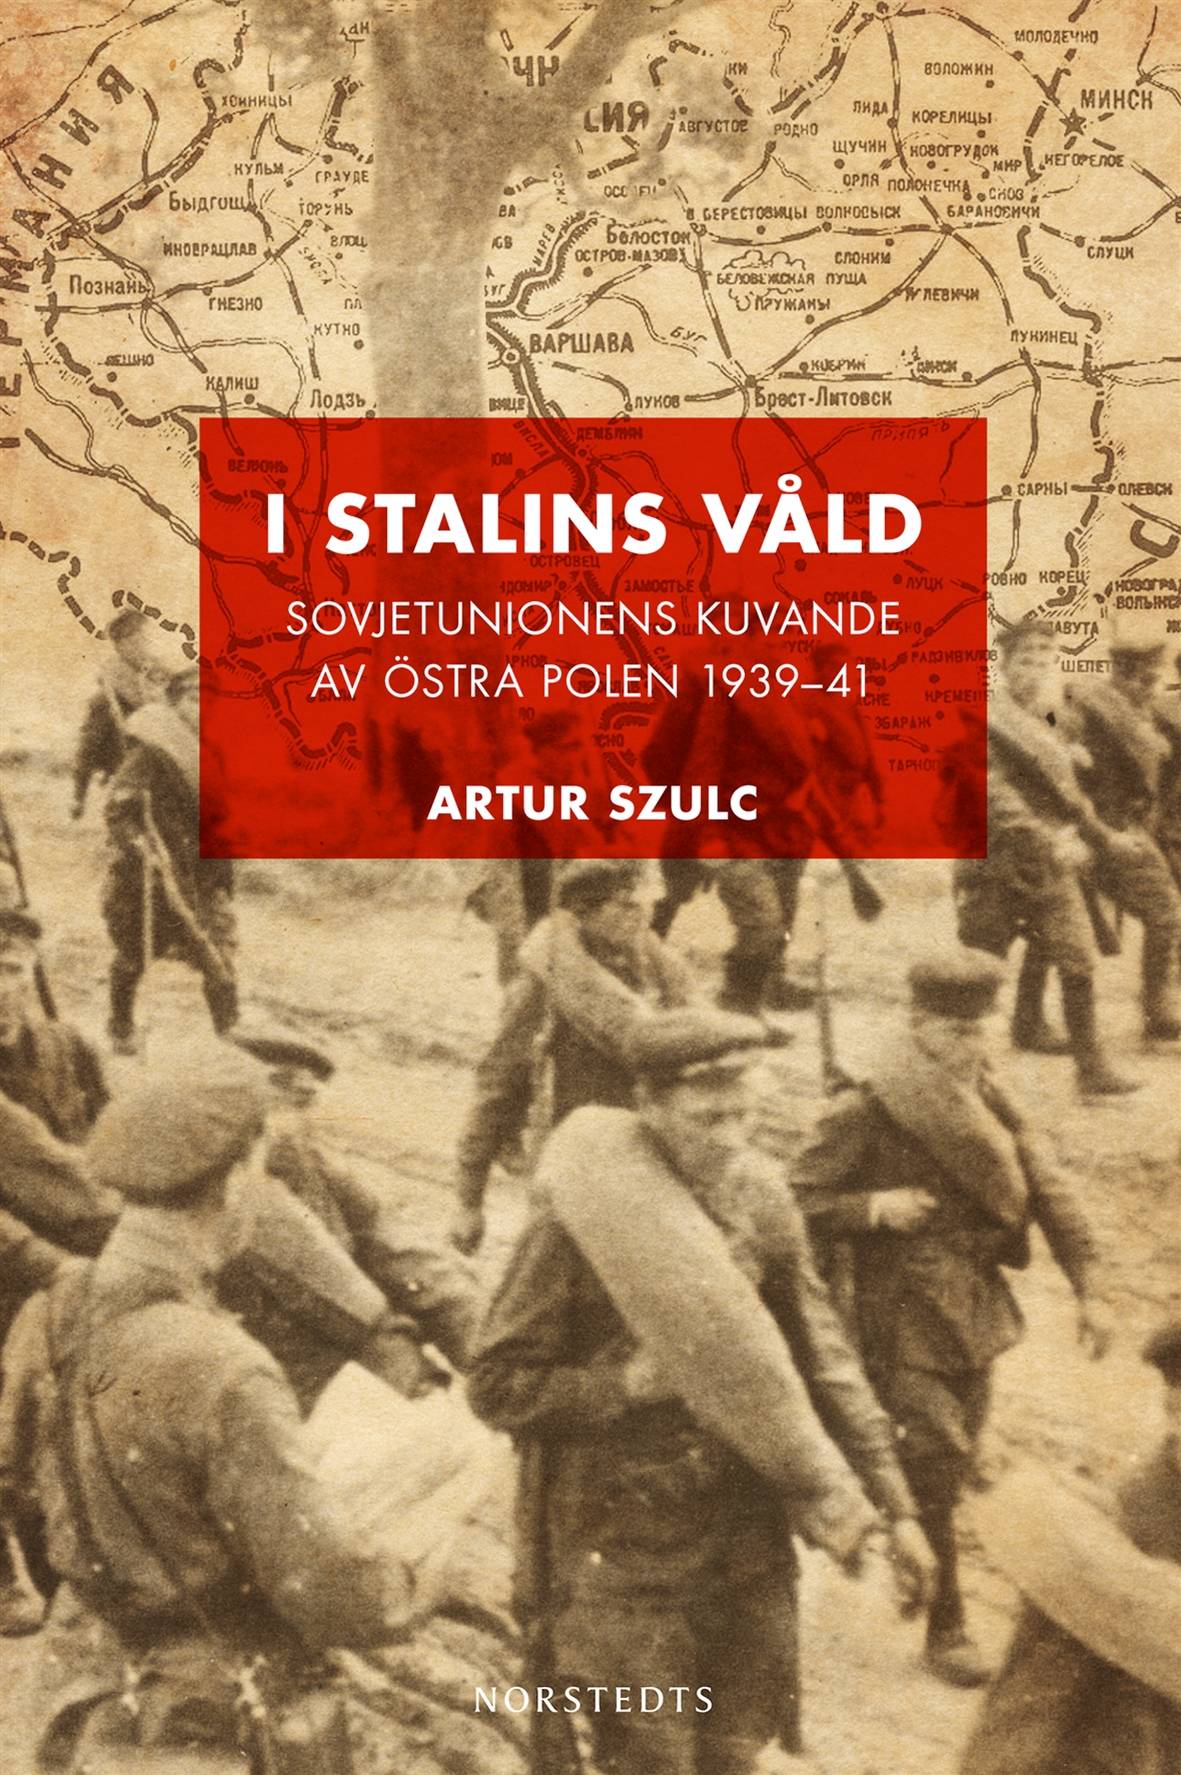 I Stalins våld : Sovjetunionens kuvande av östra Polen 1939-1941